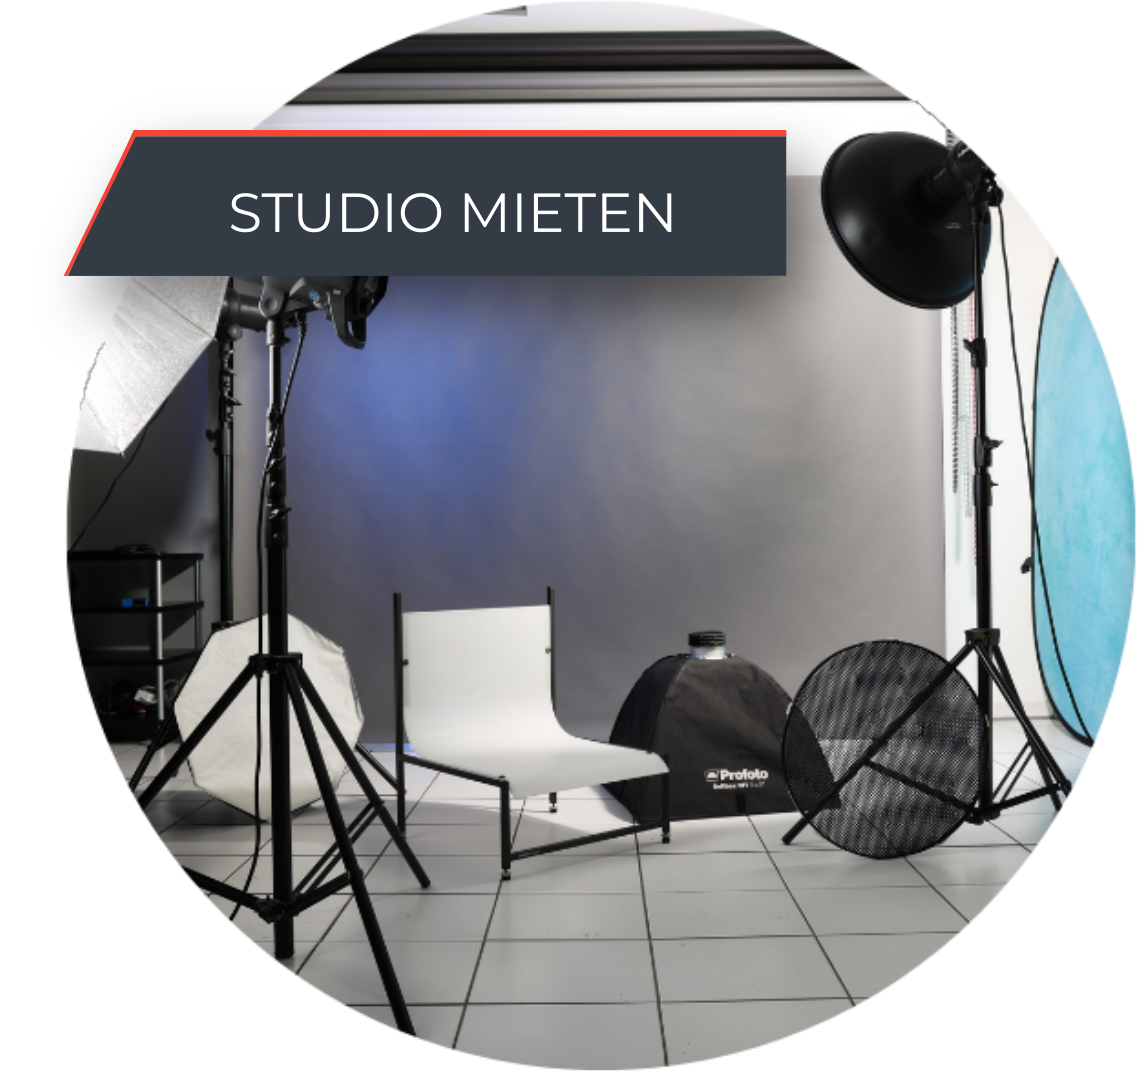 Studio-mieten-Start_(1)